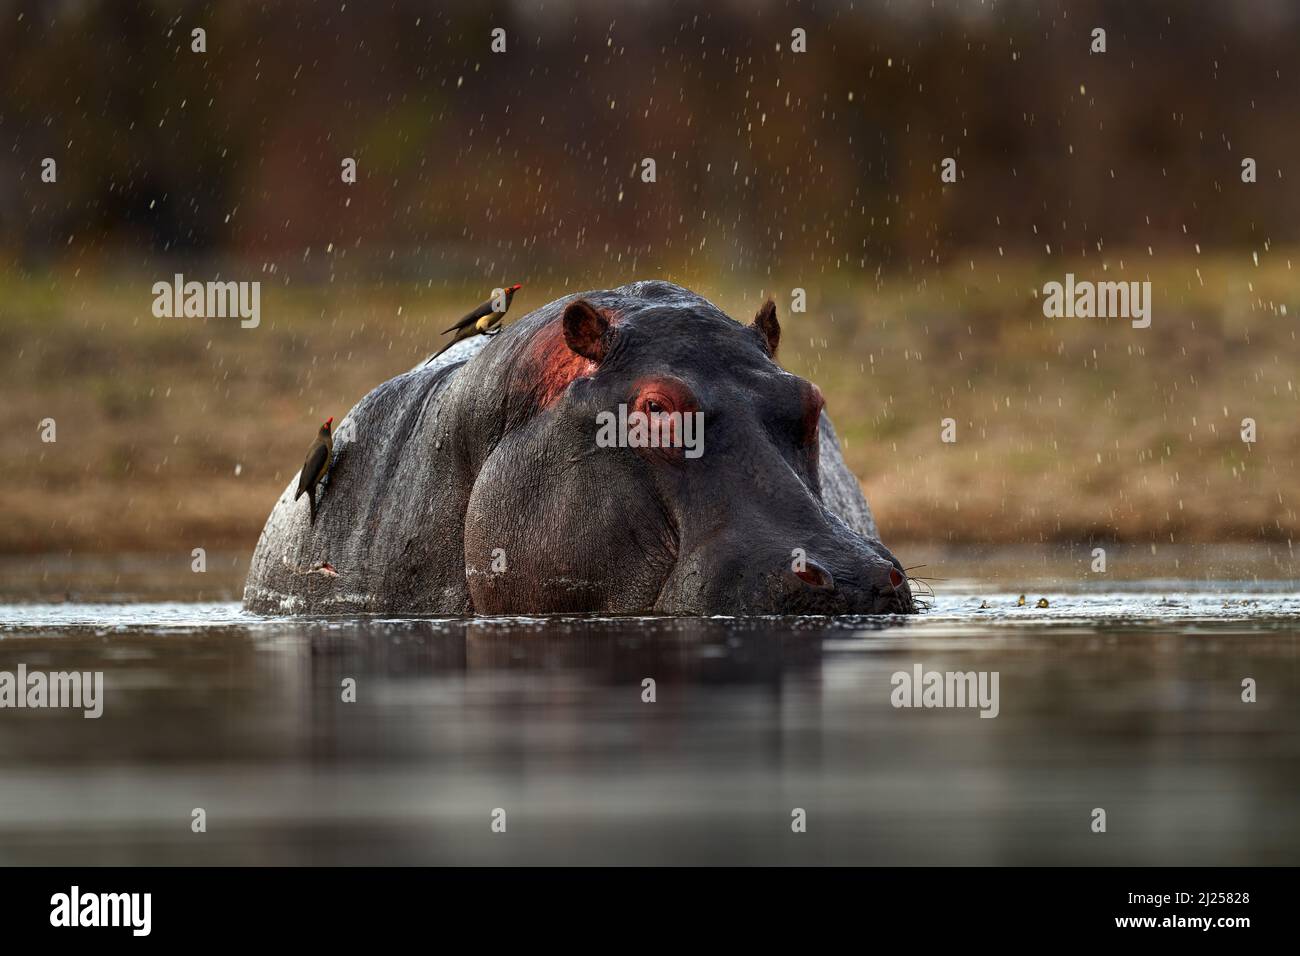 Hippo mit Vögeln. Afrikanischer Hippopotamus, Hippopotamus amphibius capensis, mit Abendsonne, Tier im natürlichen Lebensraum Wasser, Khwai, Moremi in Botsw Stockfoto